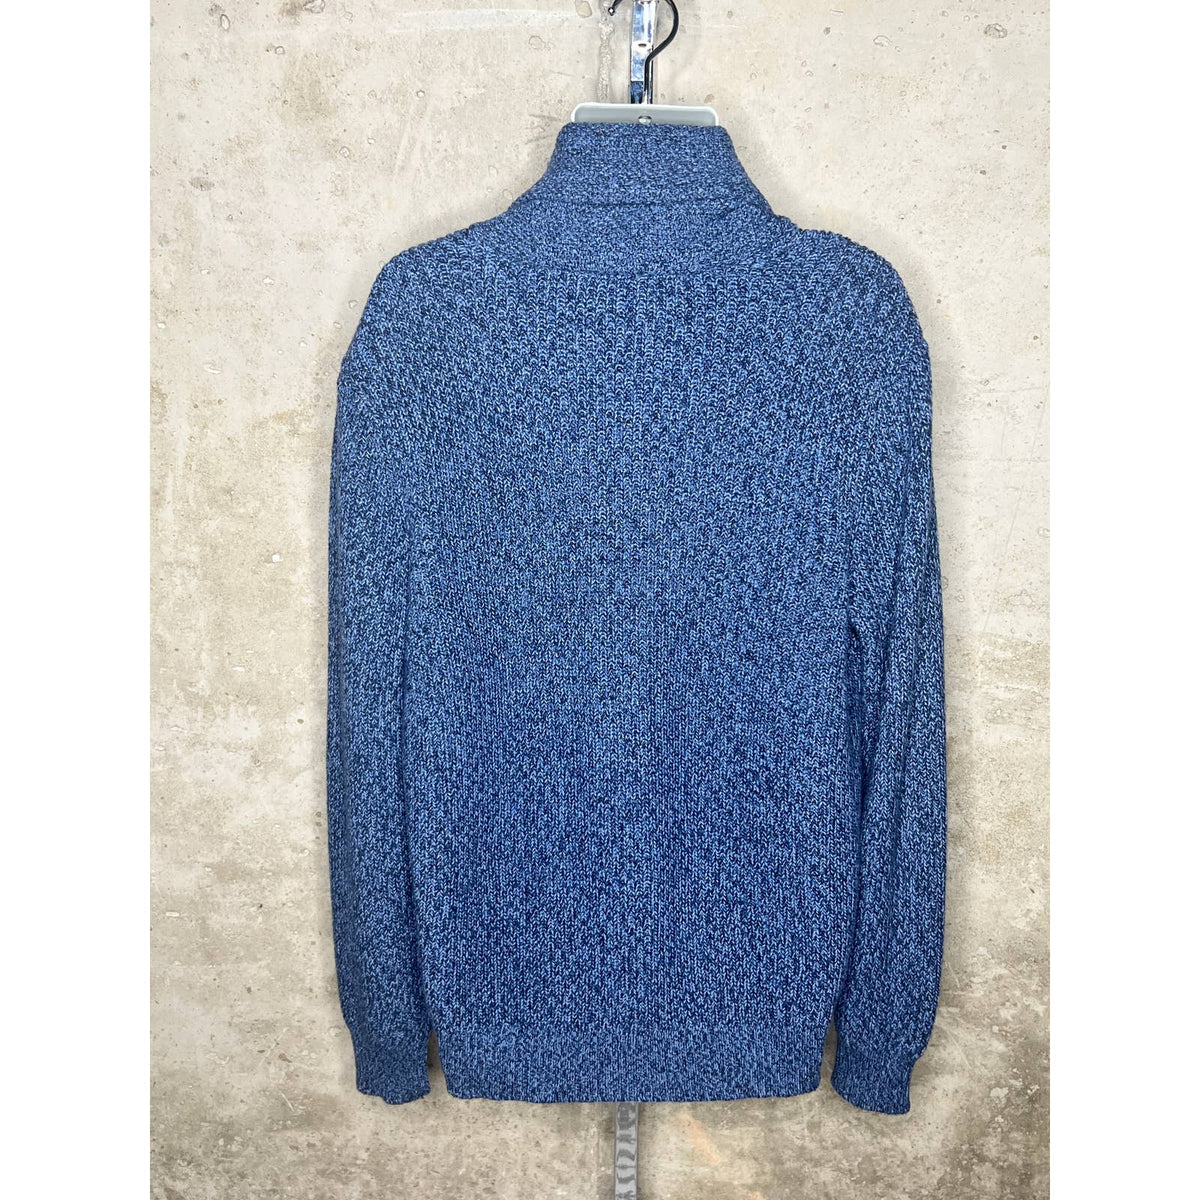 Faherty Blue Cardigan Sweater Sz. XL